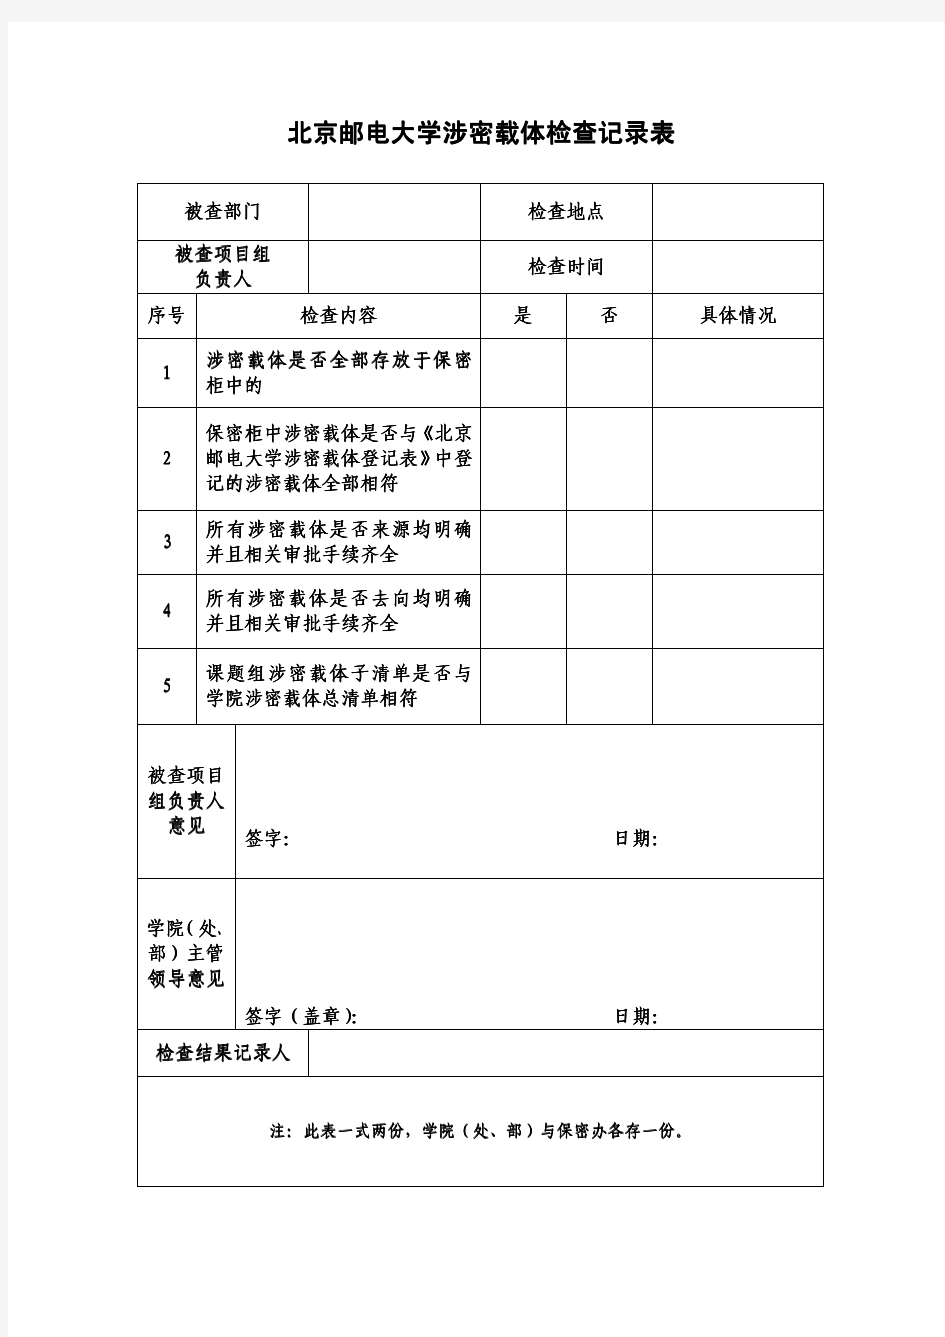 北京邮电大学 涉密载体检查记录表